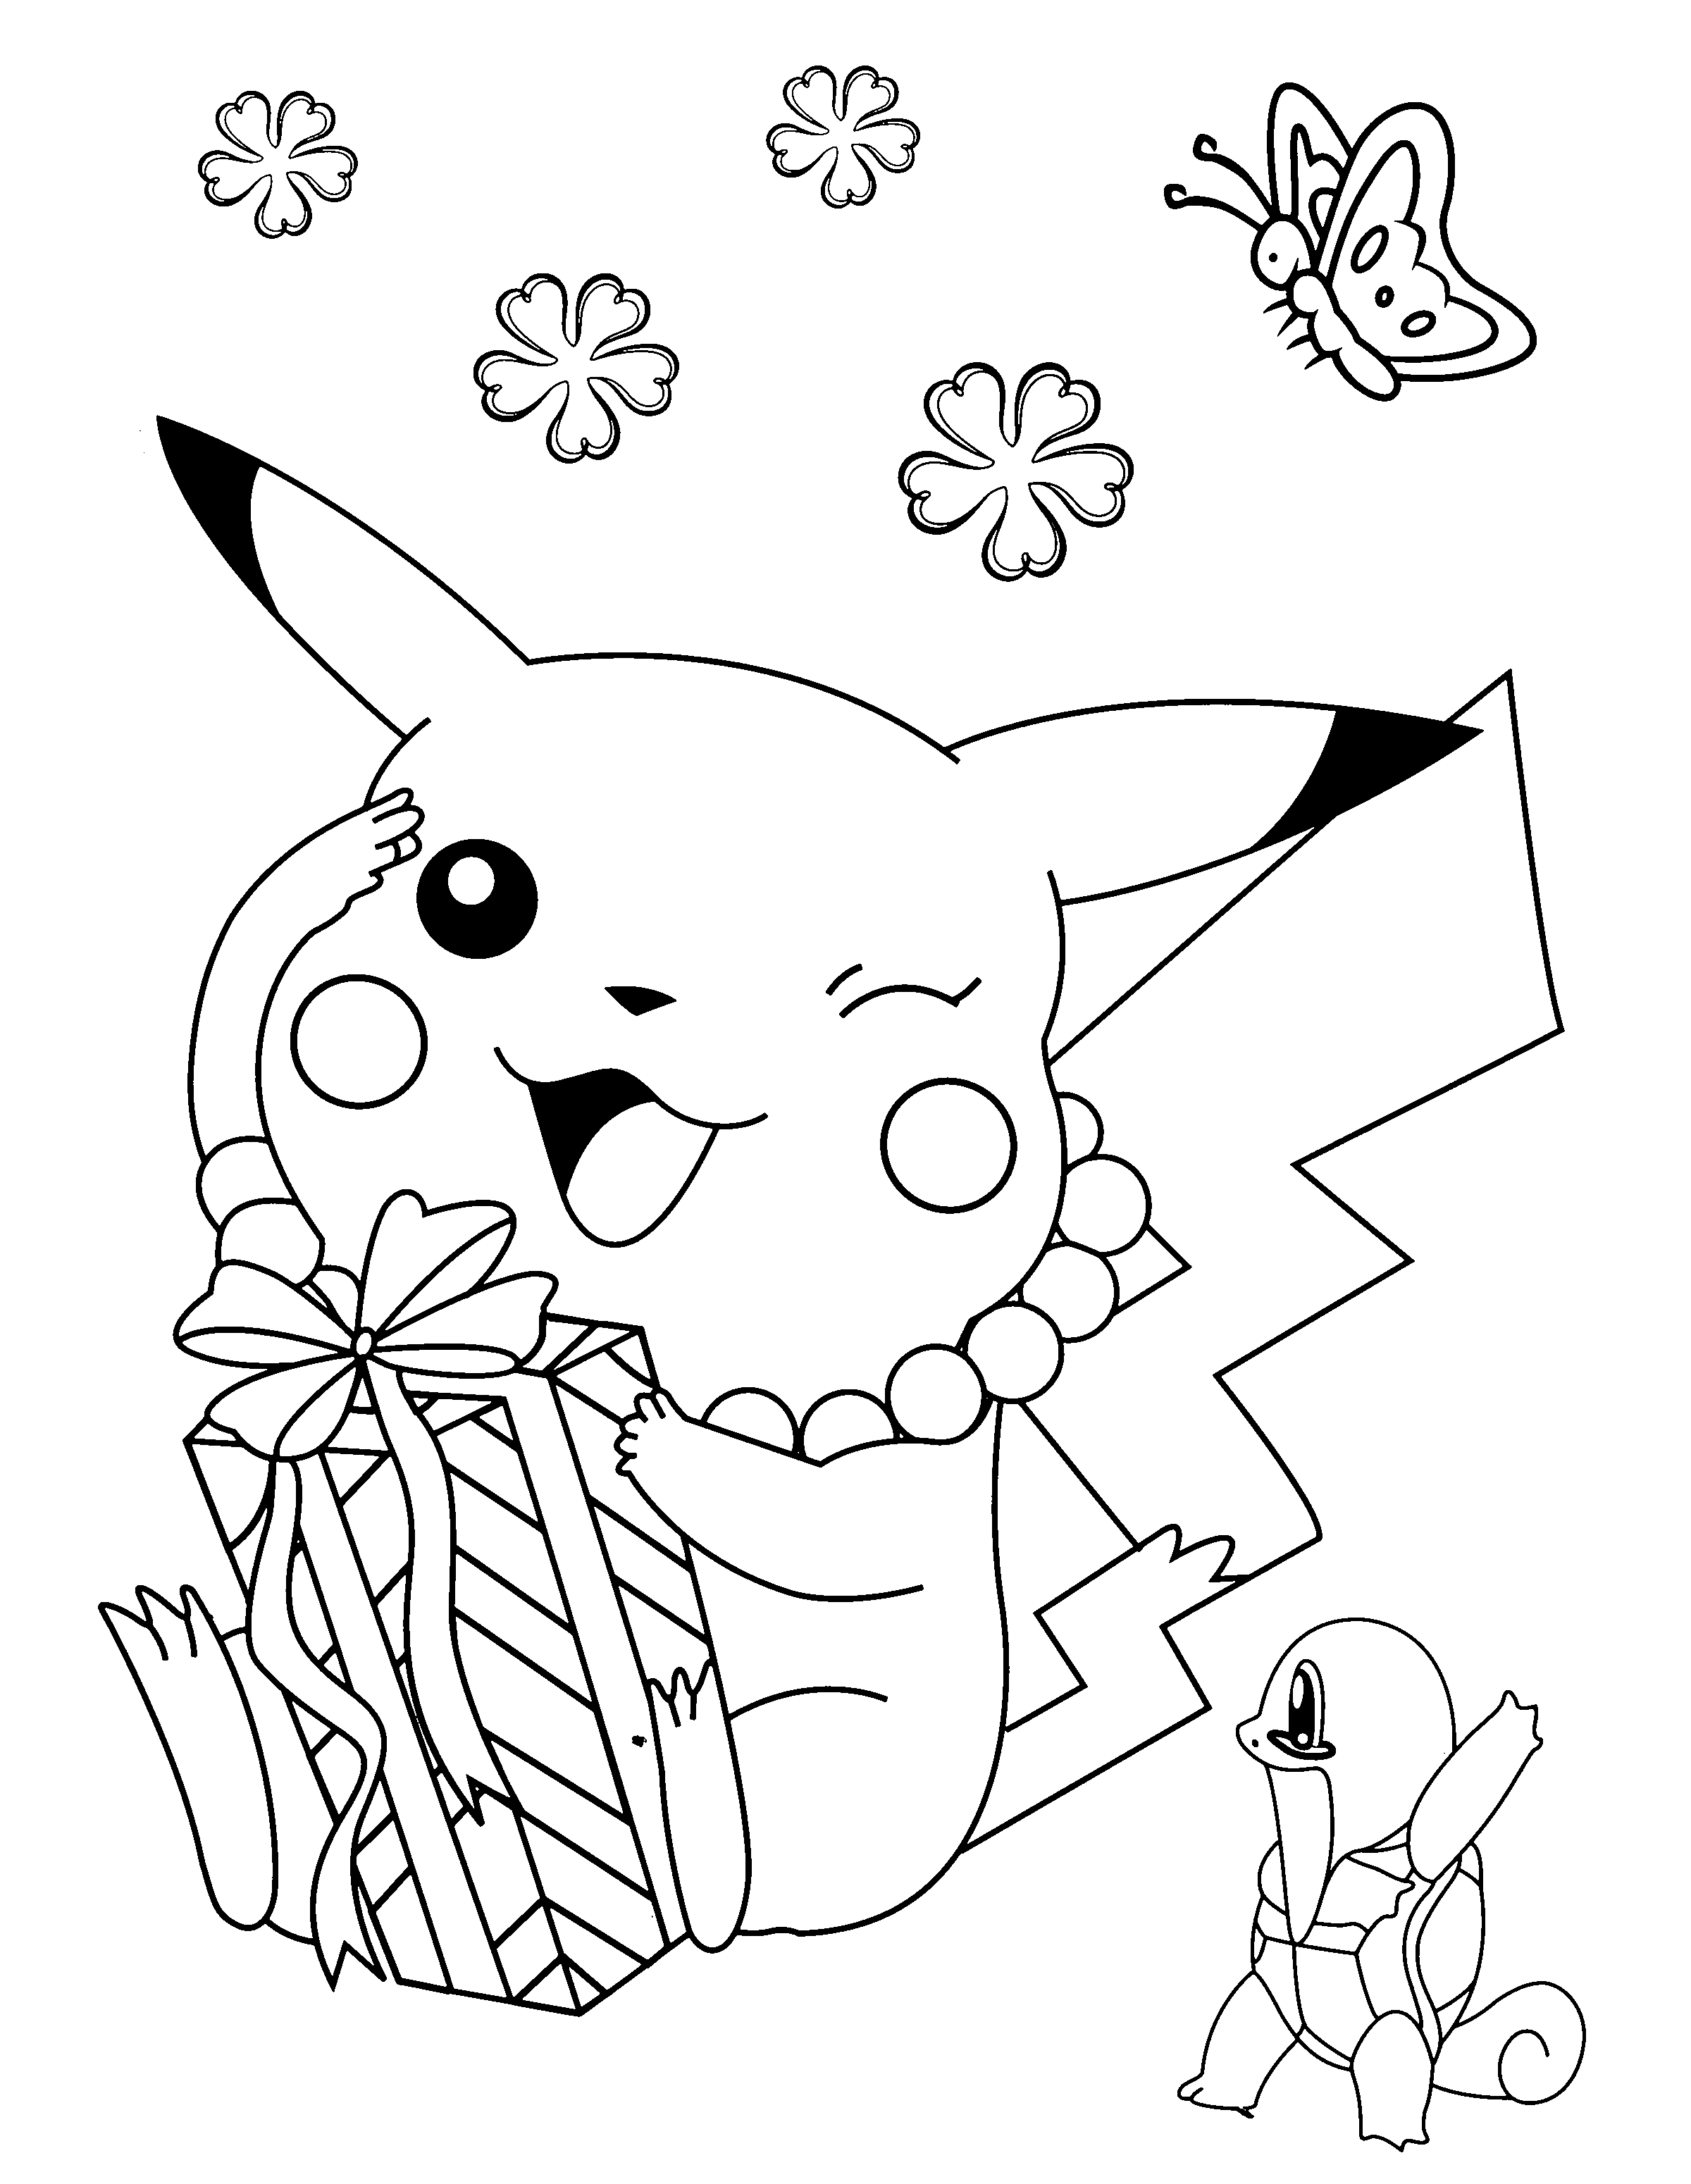 dibujo-para-colorear-pokemon-imagen-animada-0089